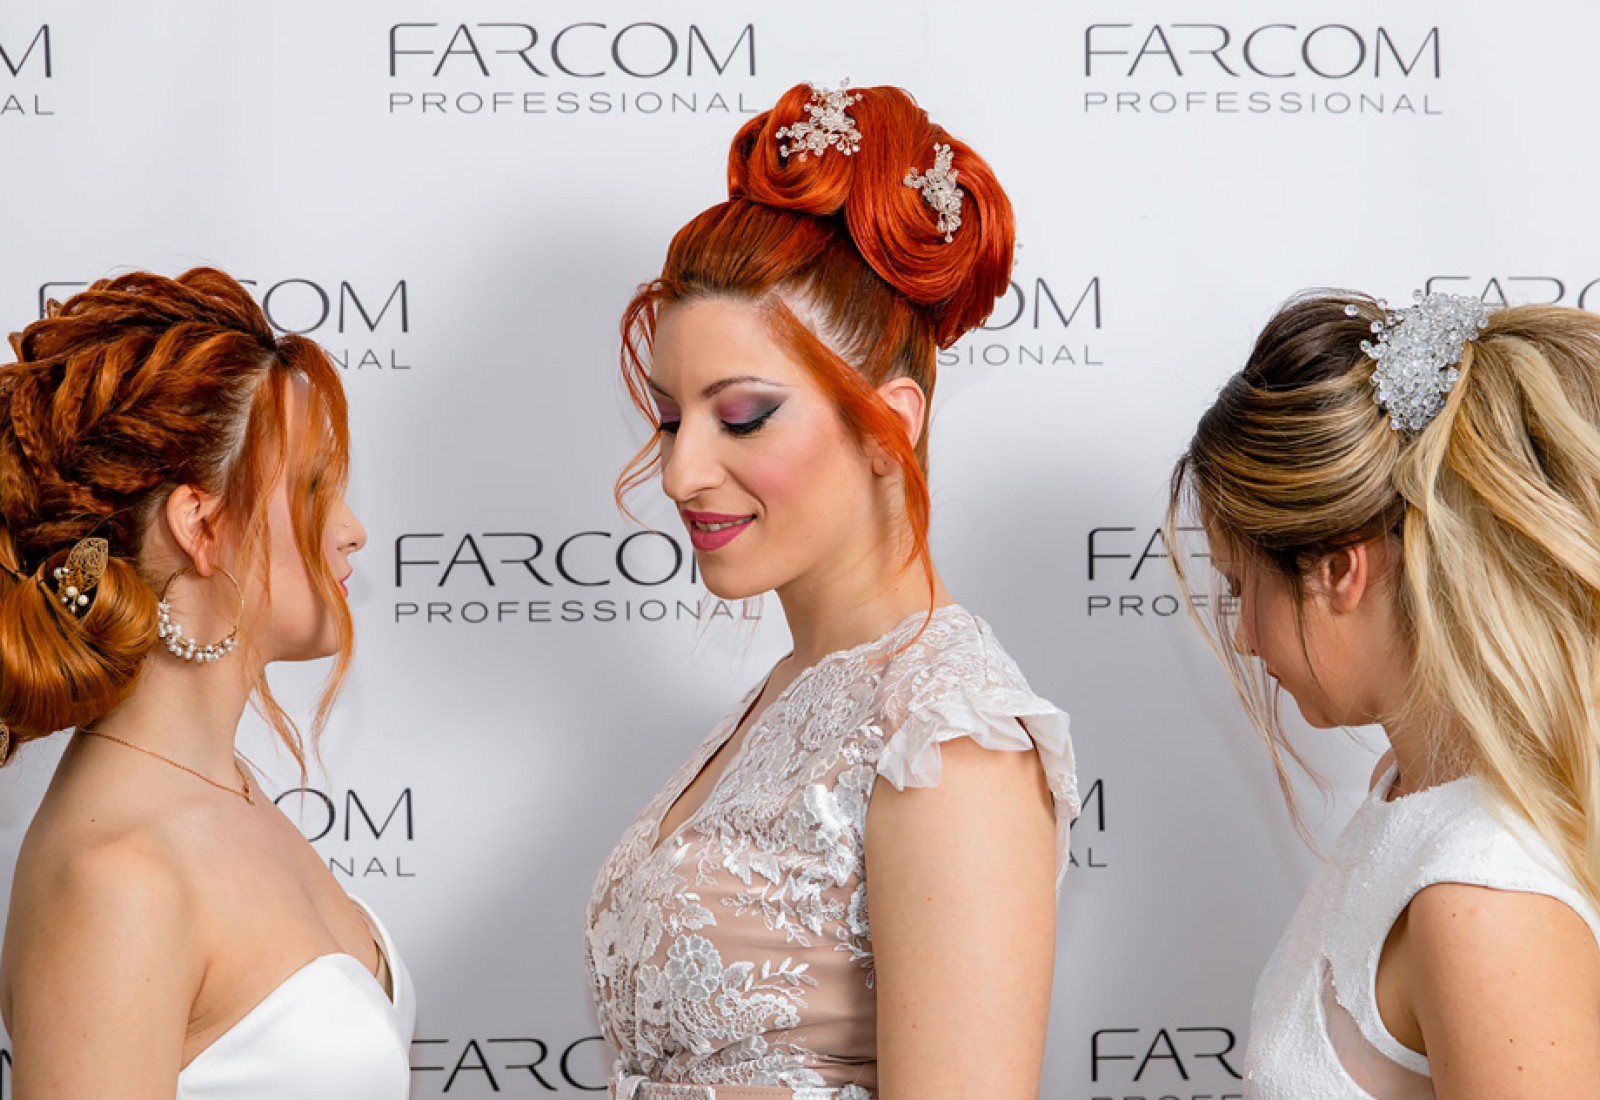 Farcom Professional – Εκπαιδευτικό Σεμινάριο Bridal & Evening Hairstyles & Workshop